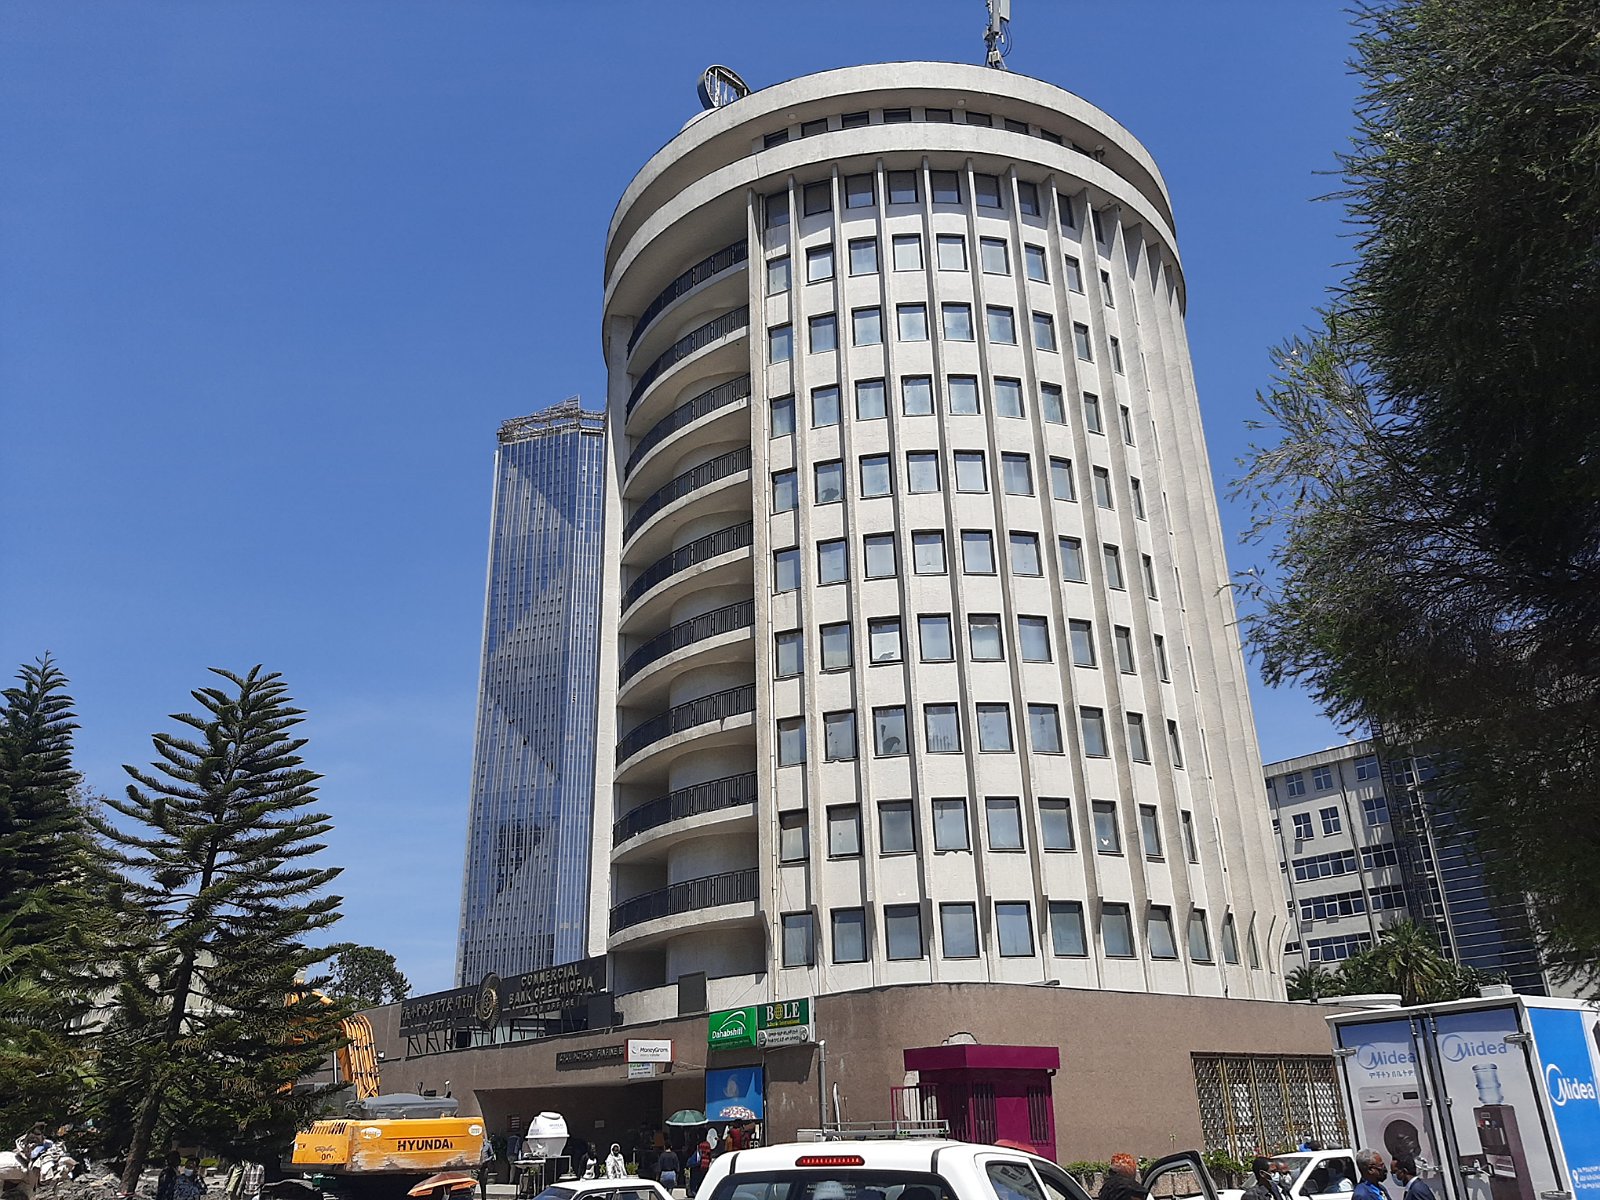 42. Okrągły budynek w Addis Abebie.